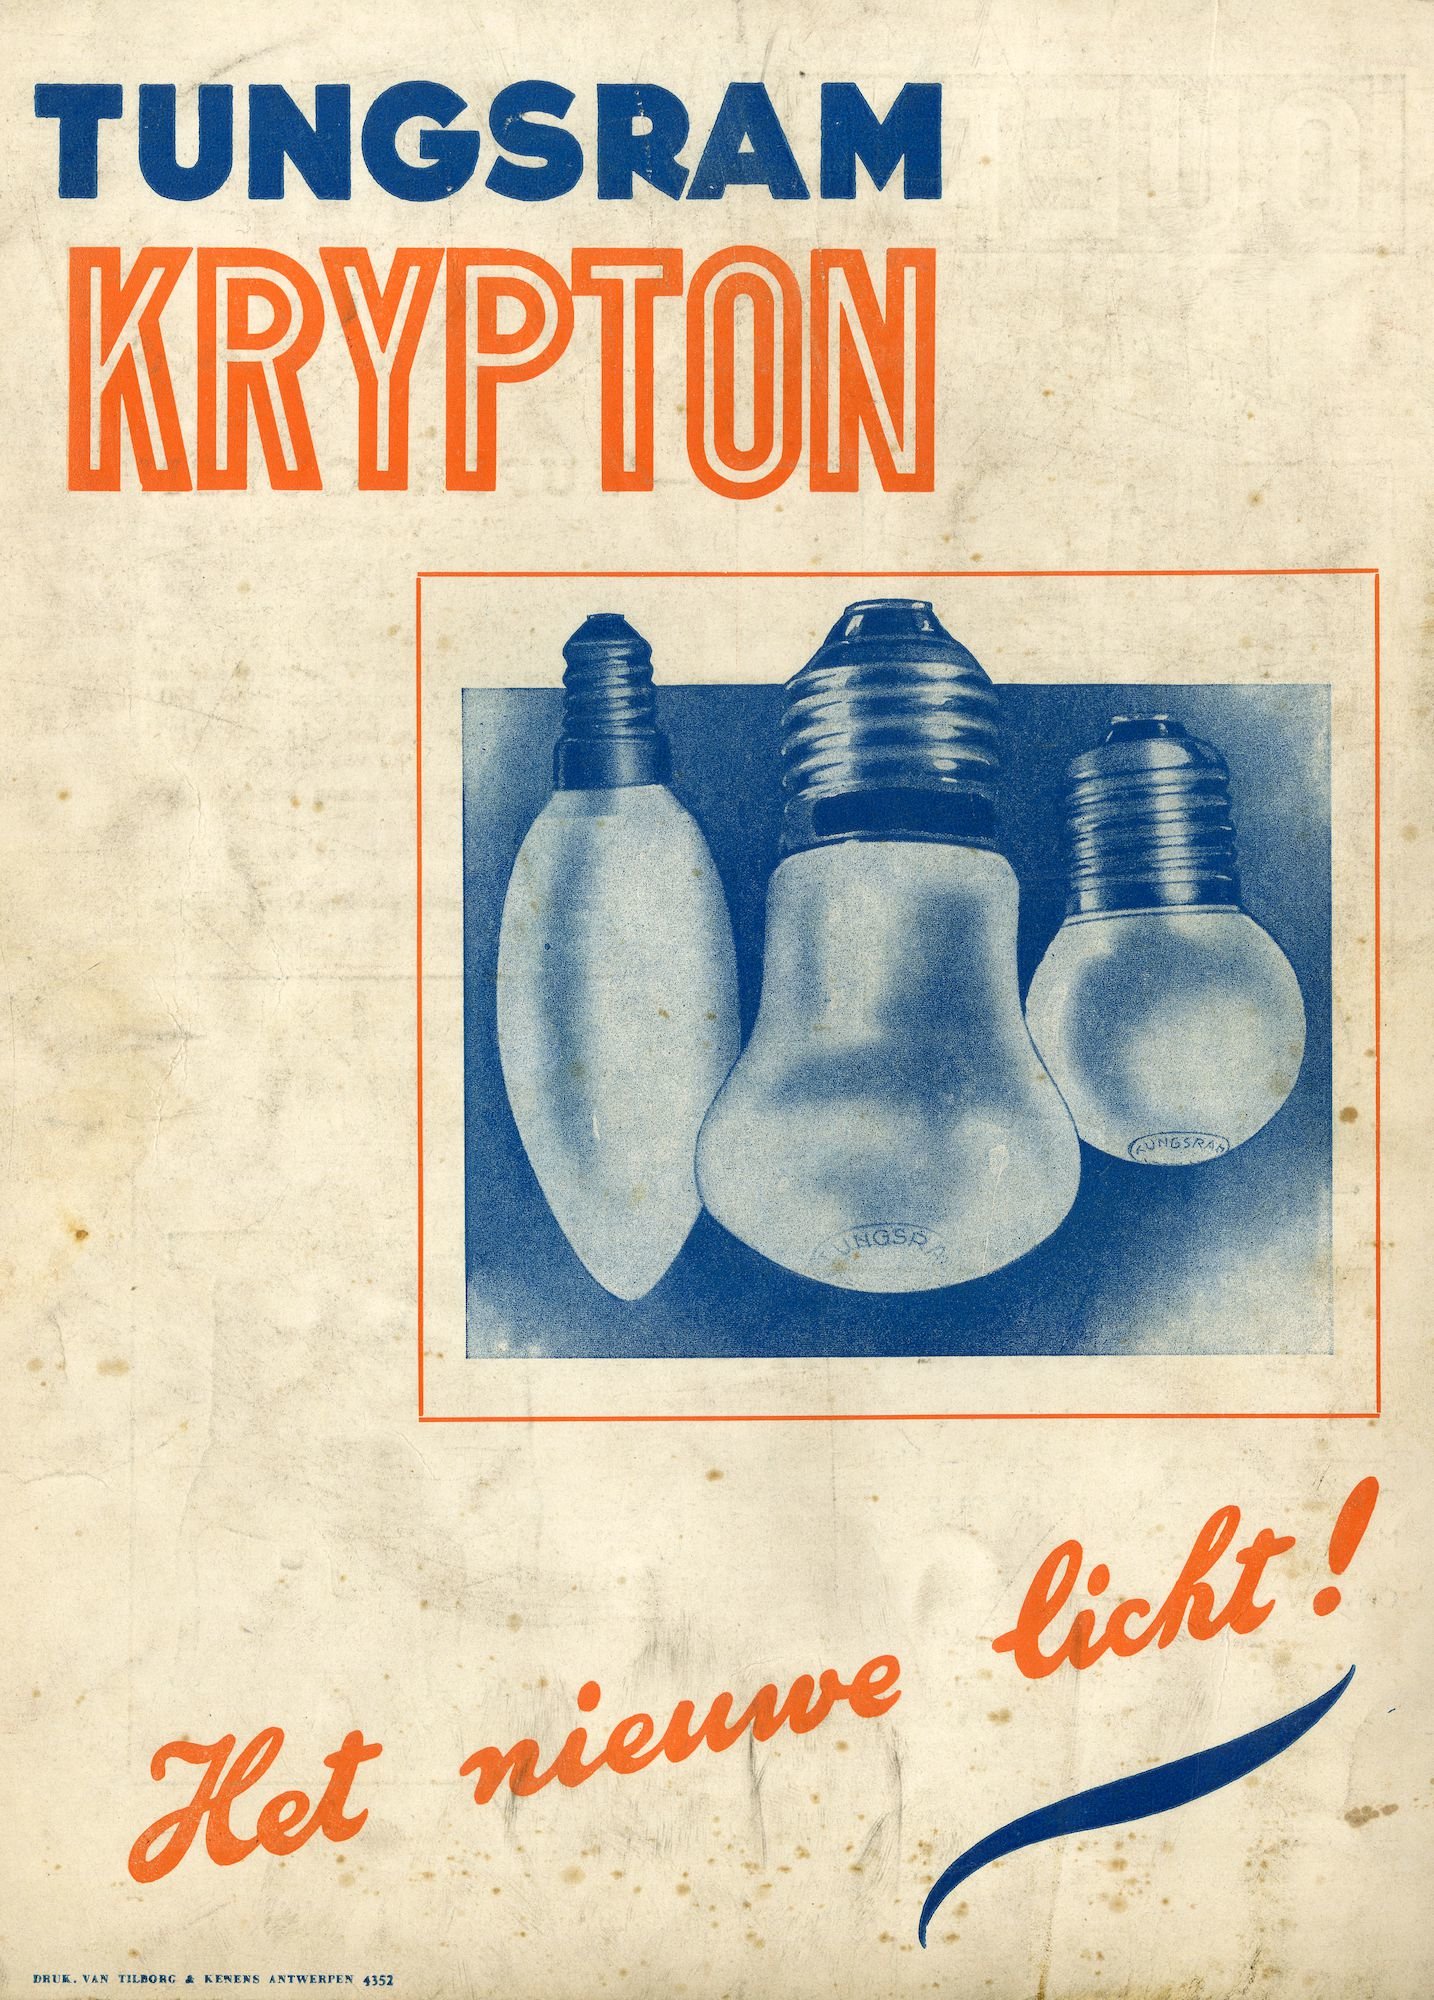 Reclame voor kryptonlampen van het merk Tungsram